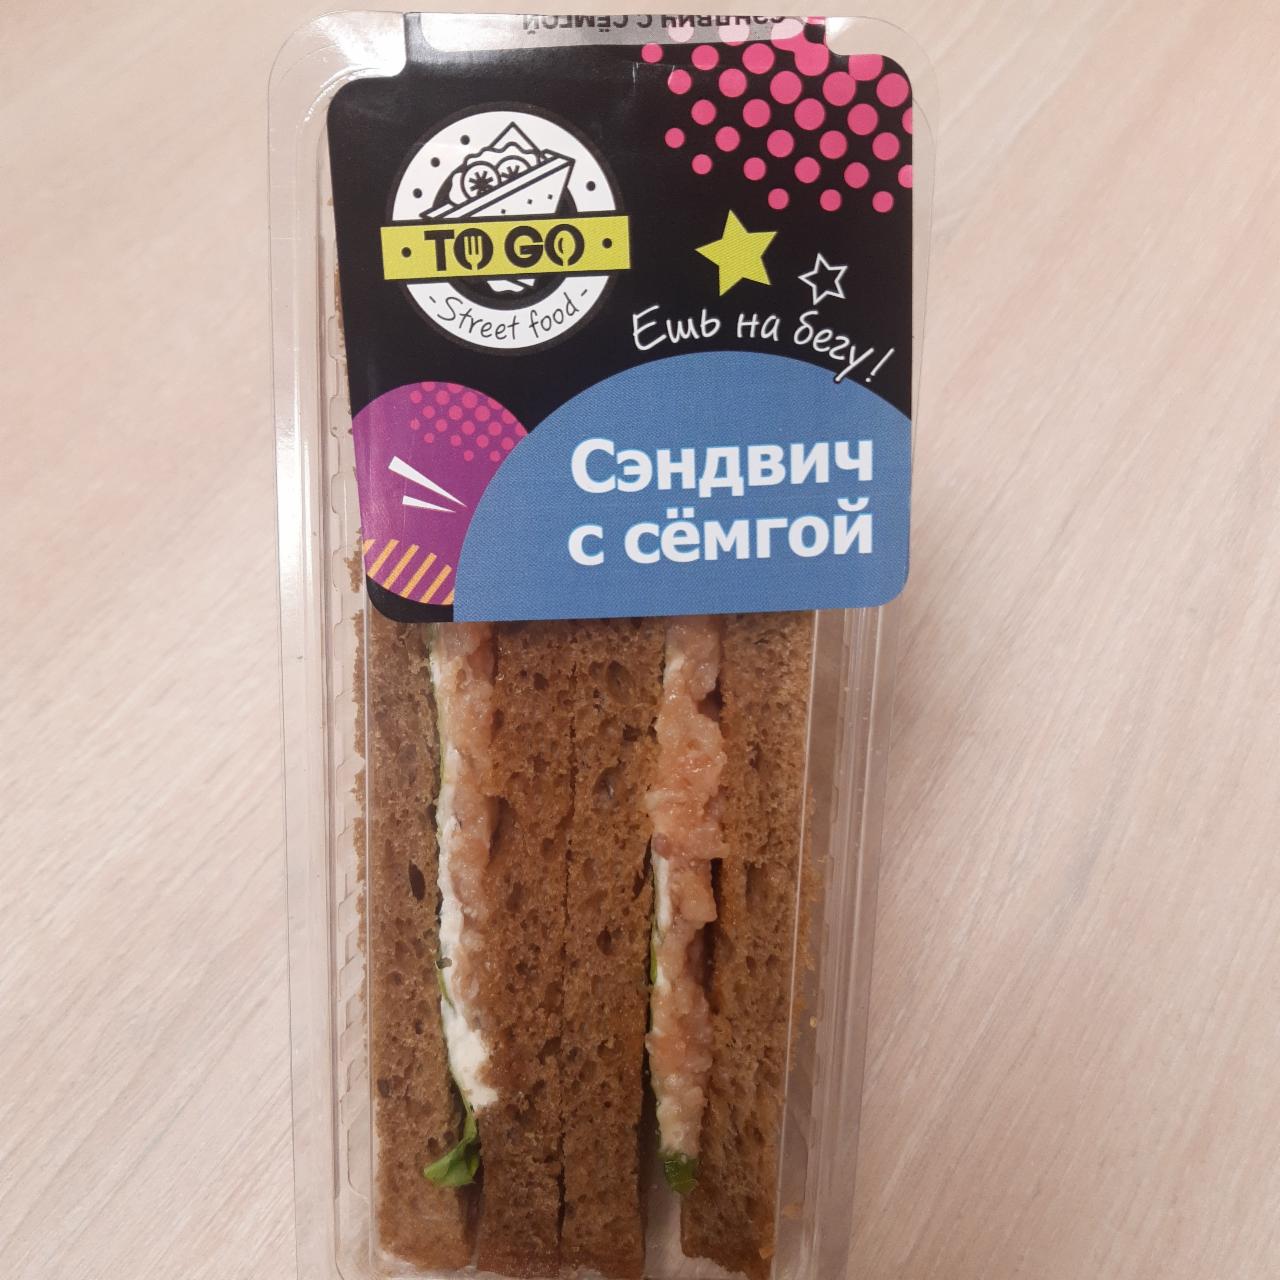 Фото - Сэндвич с сёмгой, с чёрным хлебом to go